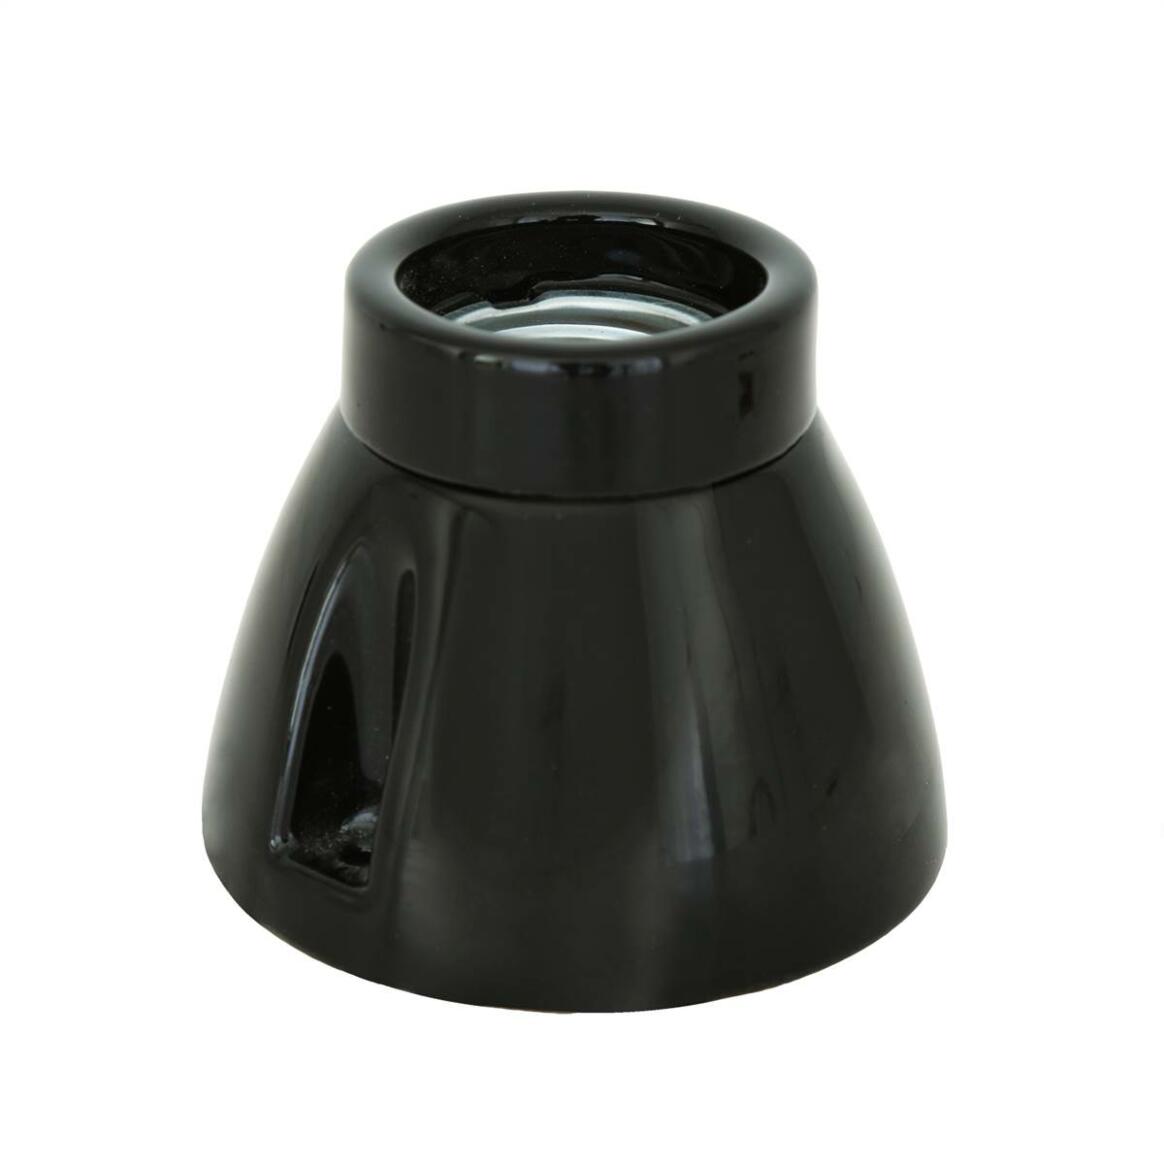 Batten porcelain lamp holder E27 main product image